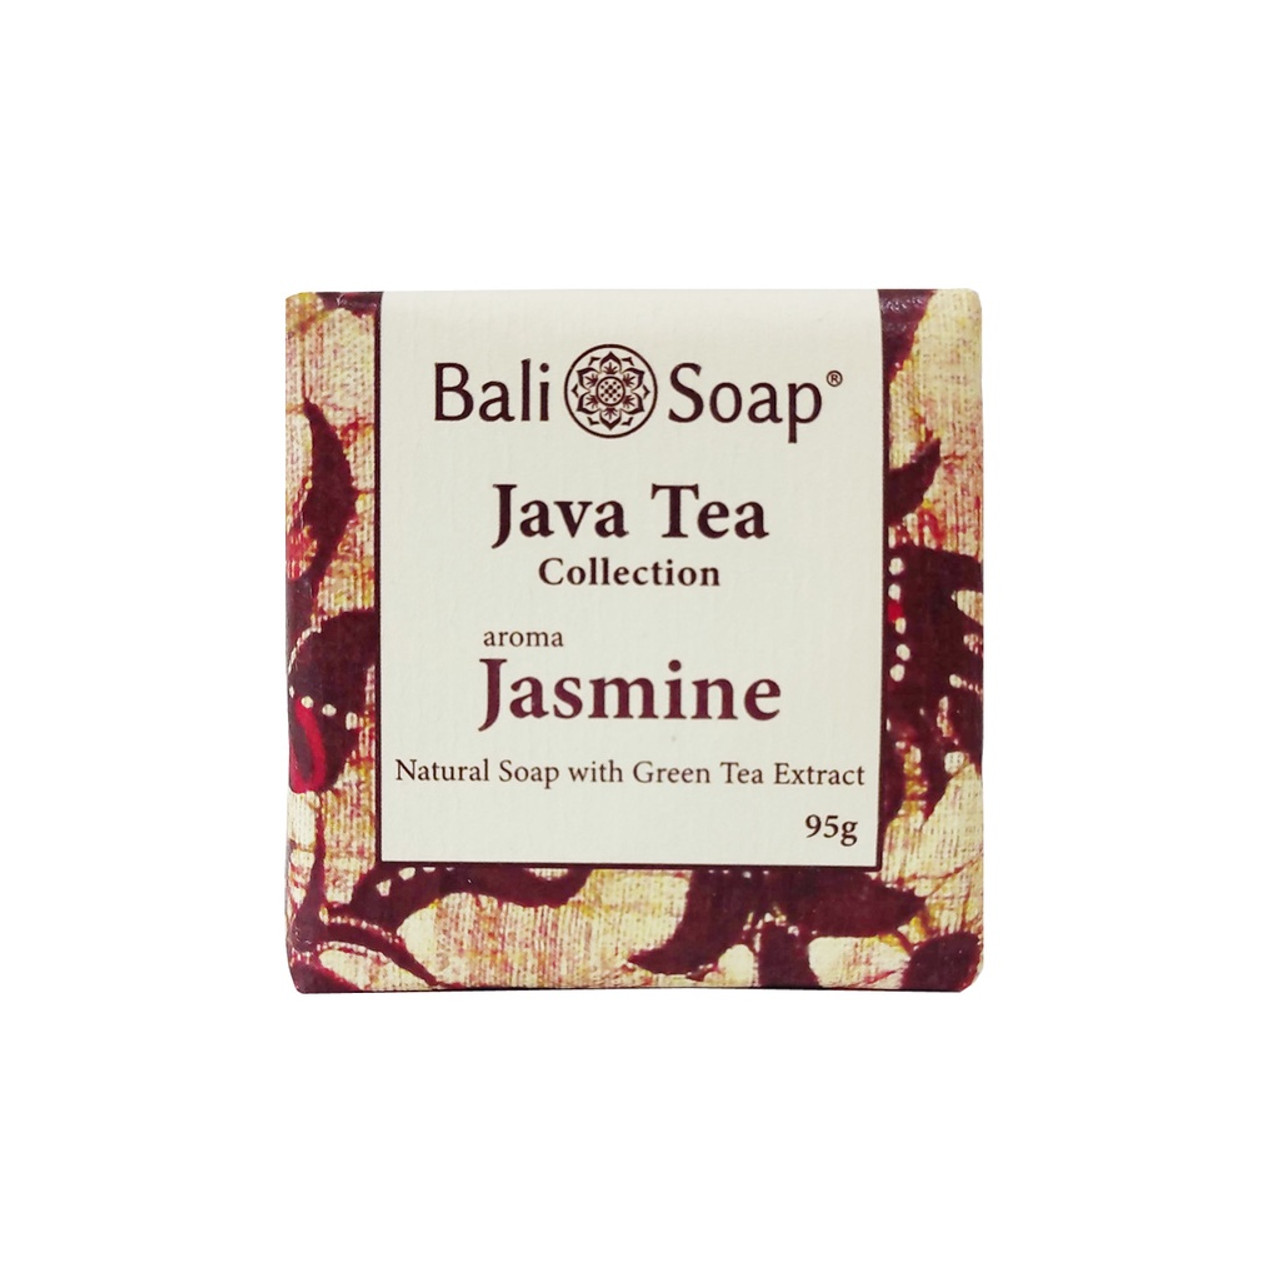 Bali Soap Java Tea - Jasmine, 95gr